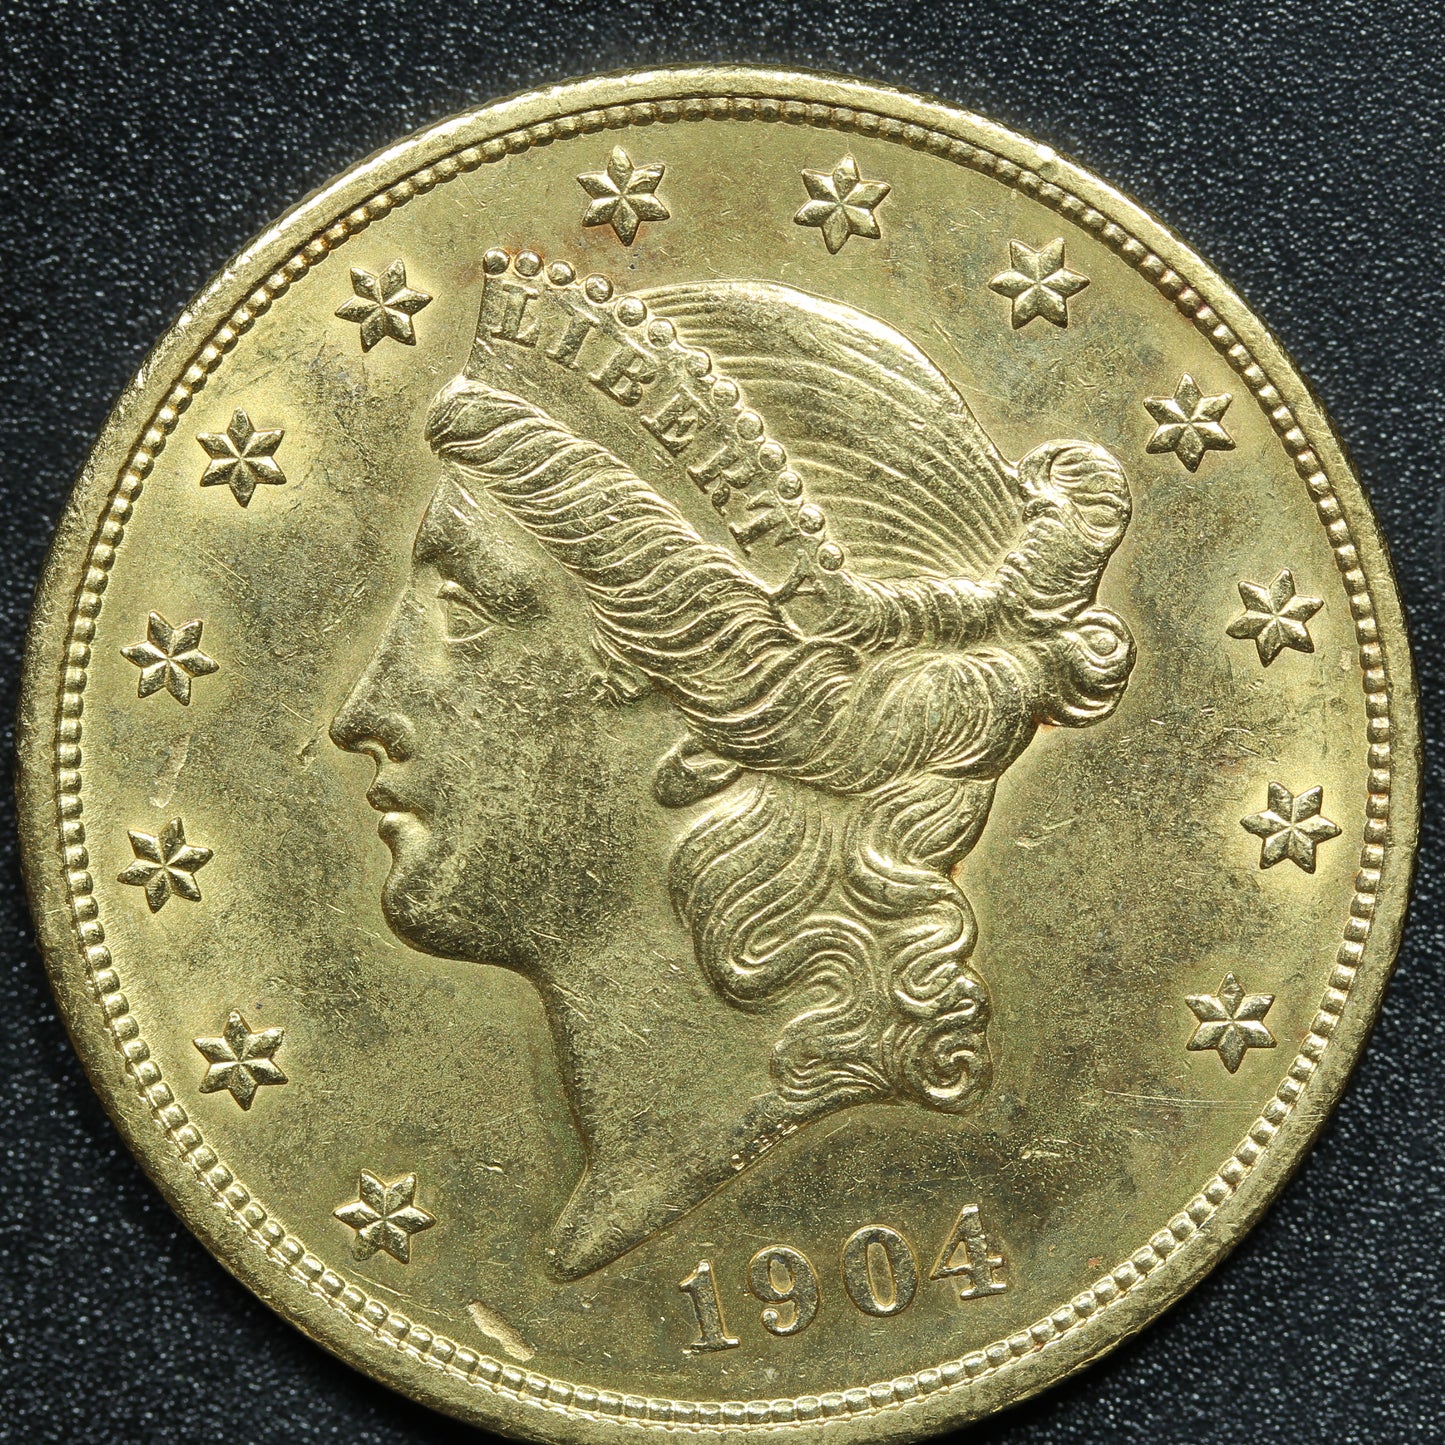 1904 $20 Gold Liberty Head Double Eagle - Philadelphia